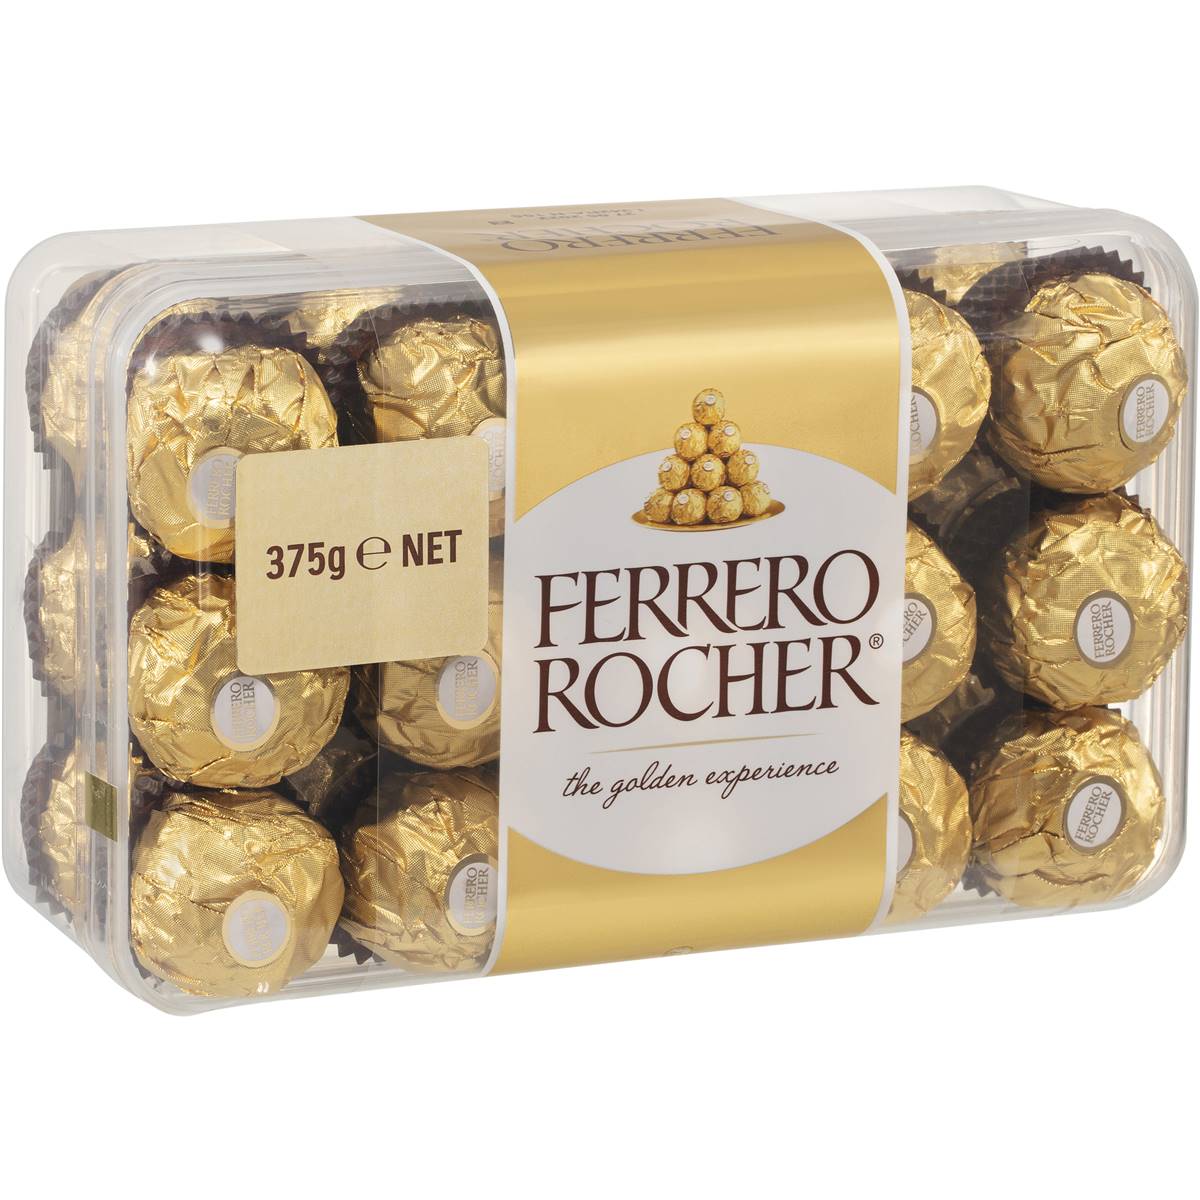 Ferrero rocher bulk